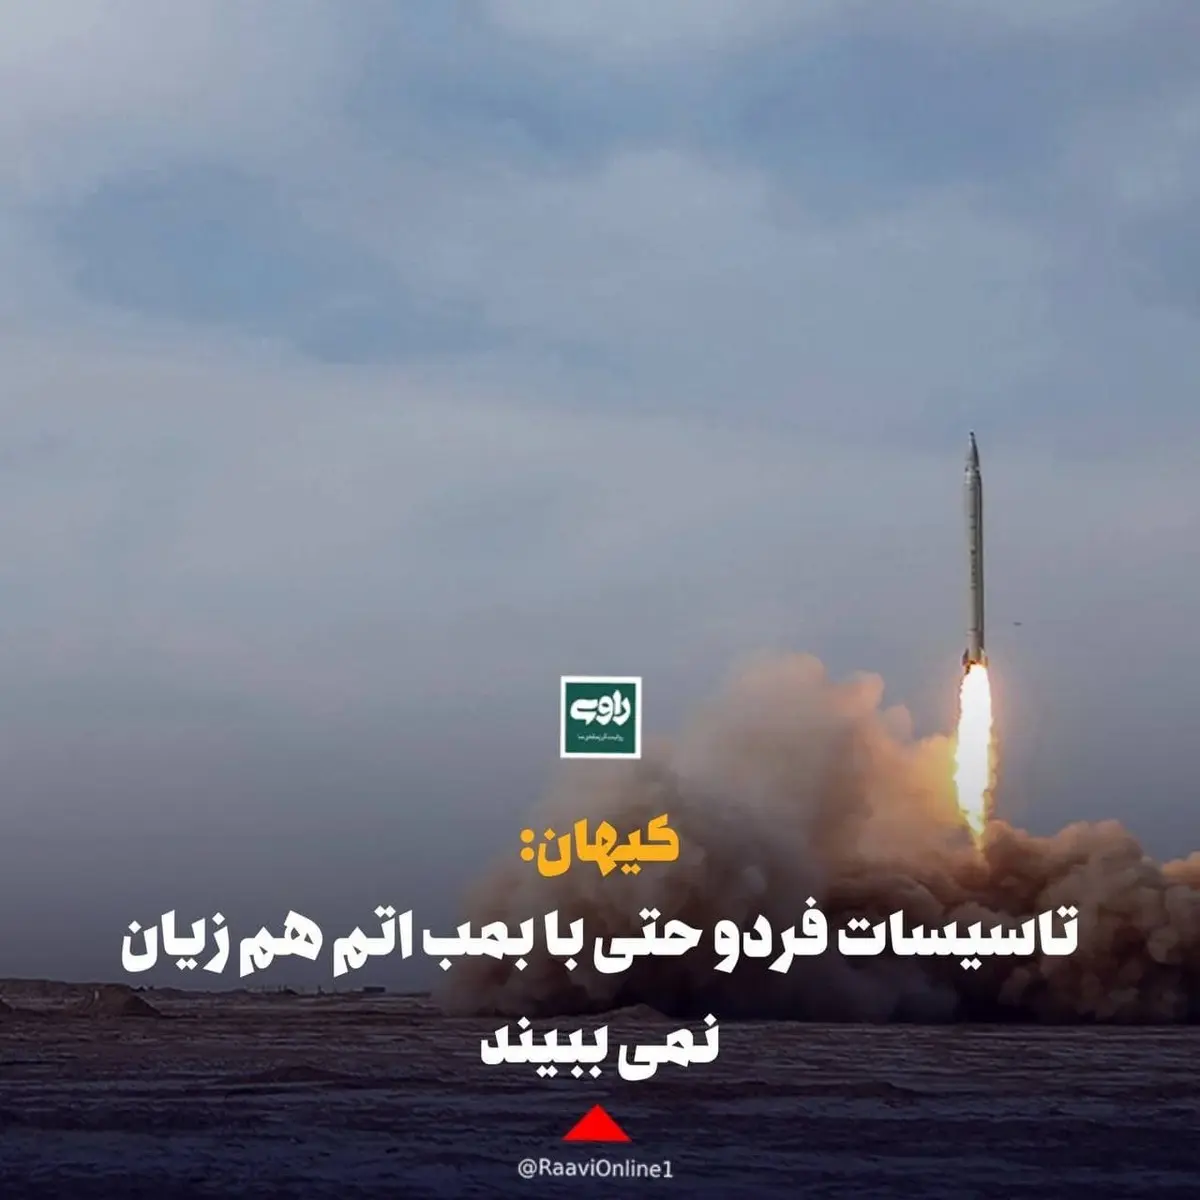 کیهان: تاسیسات فردو حتی با بمب اتم هم آسیب نمی ببیند